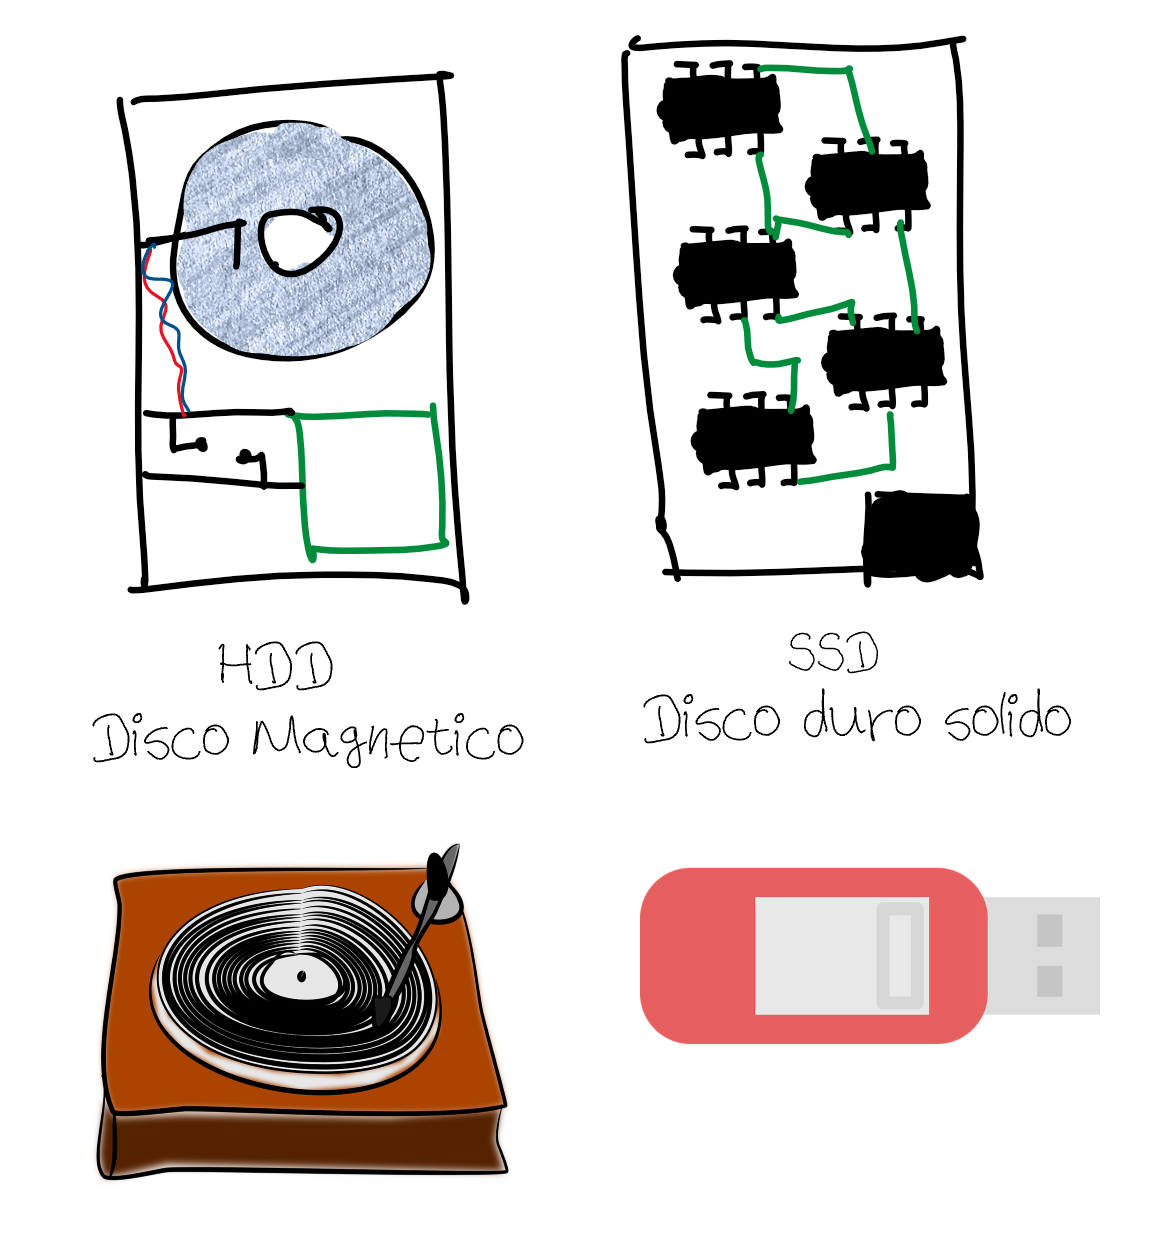 Ilustraciones de un tocadiscos y un disco duro sólido